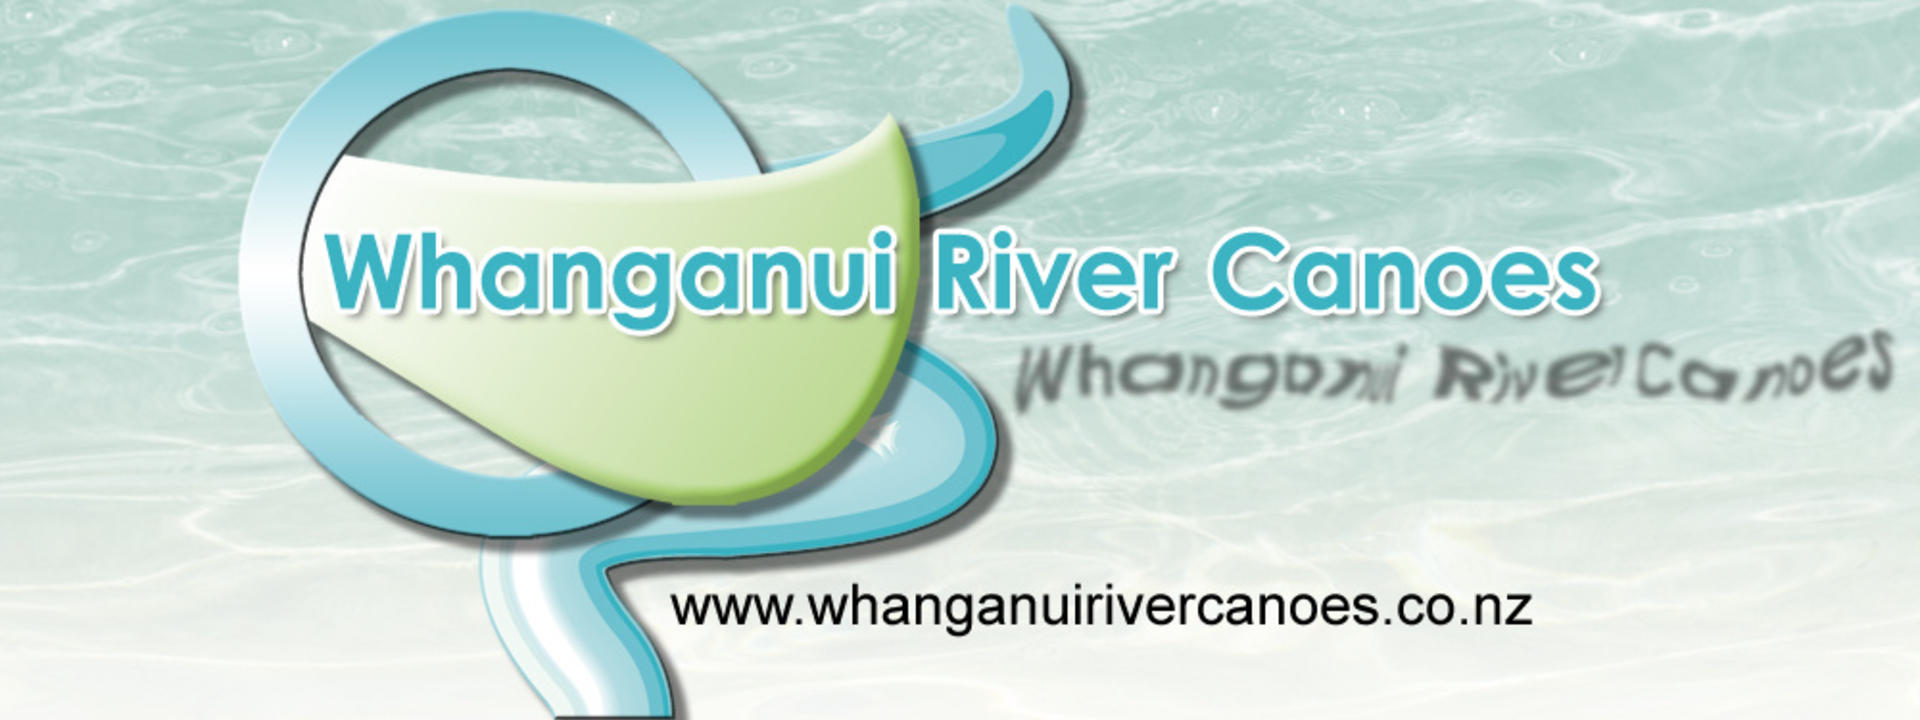 Logo: Whanganui River Canoes